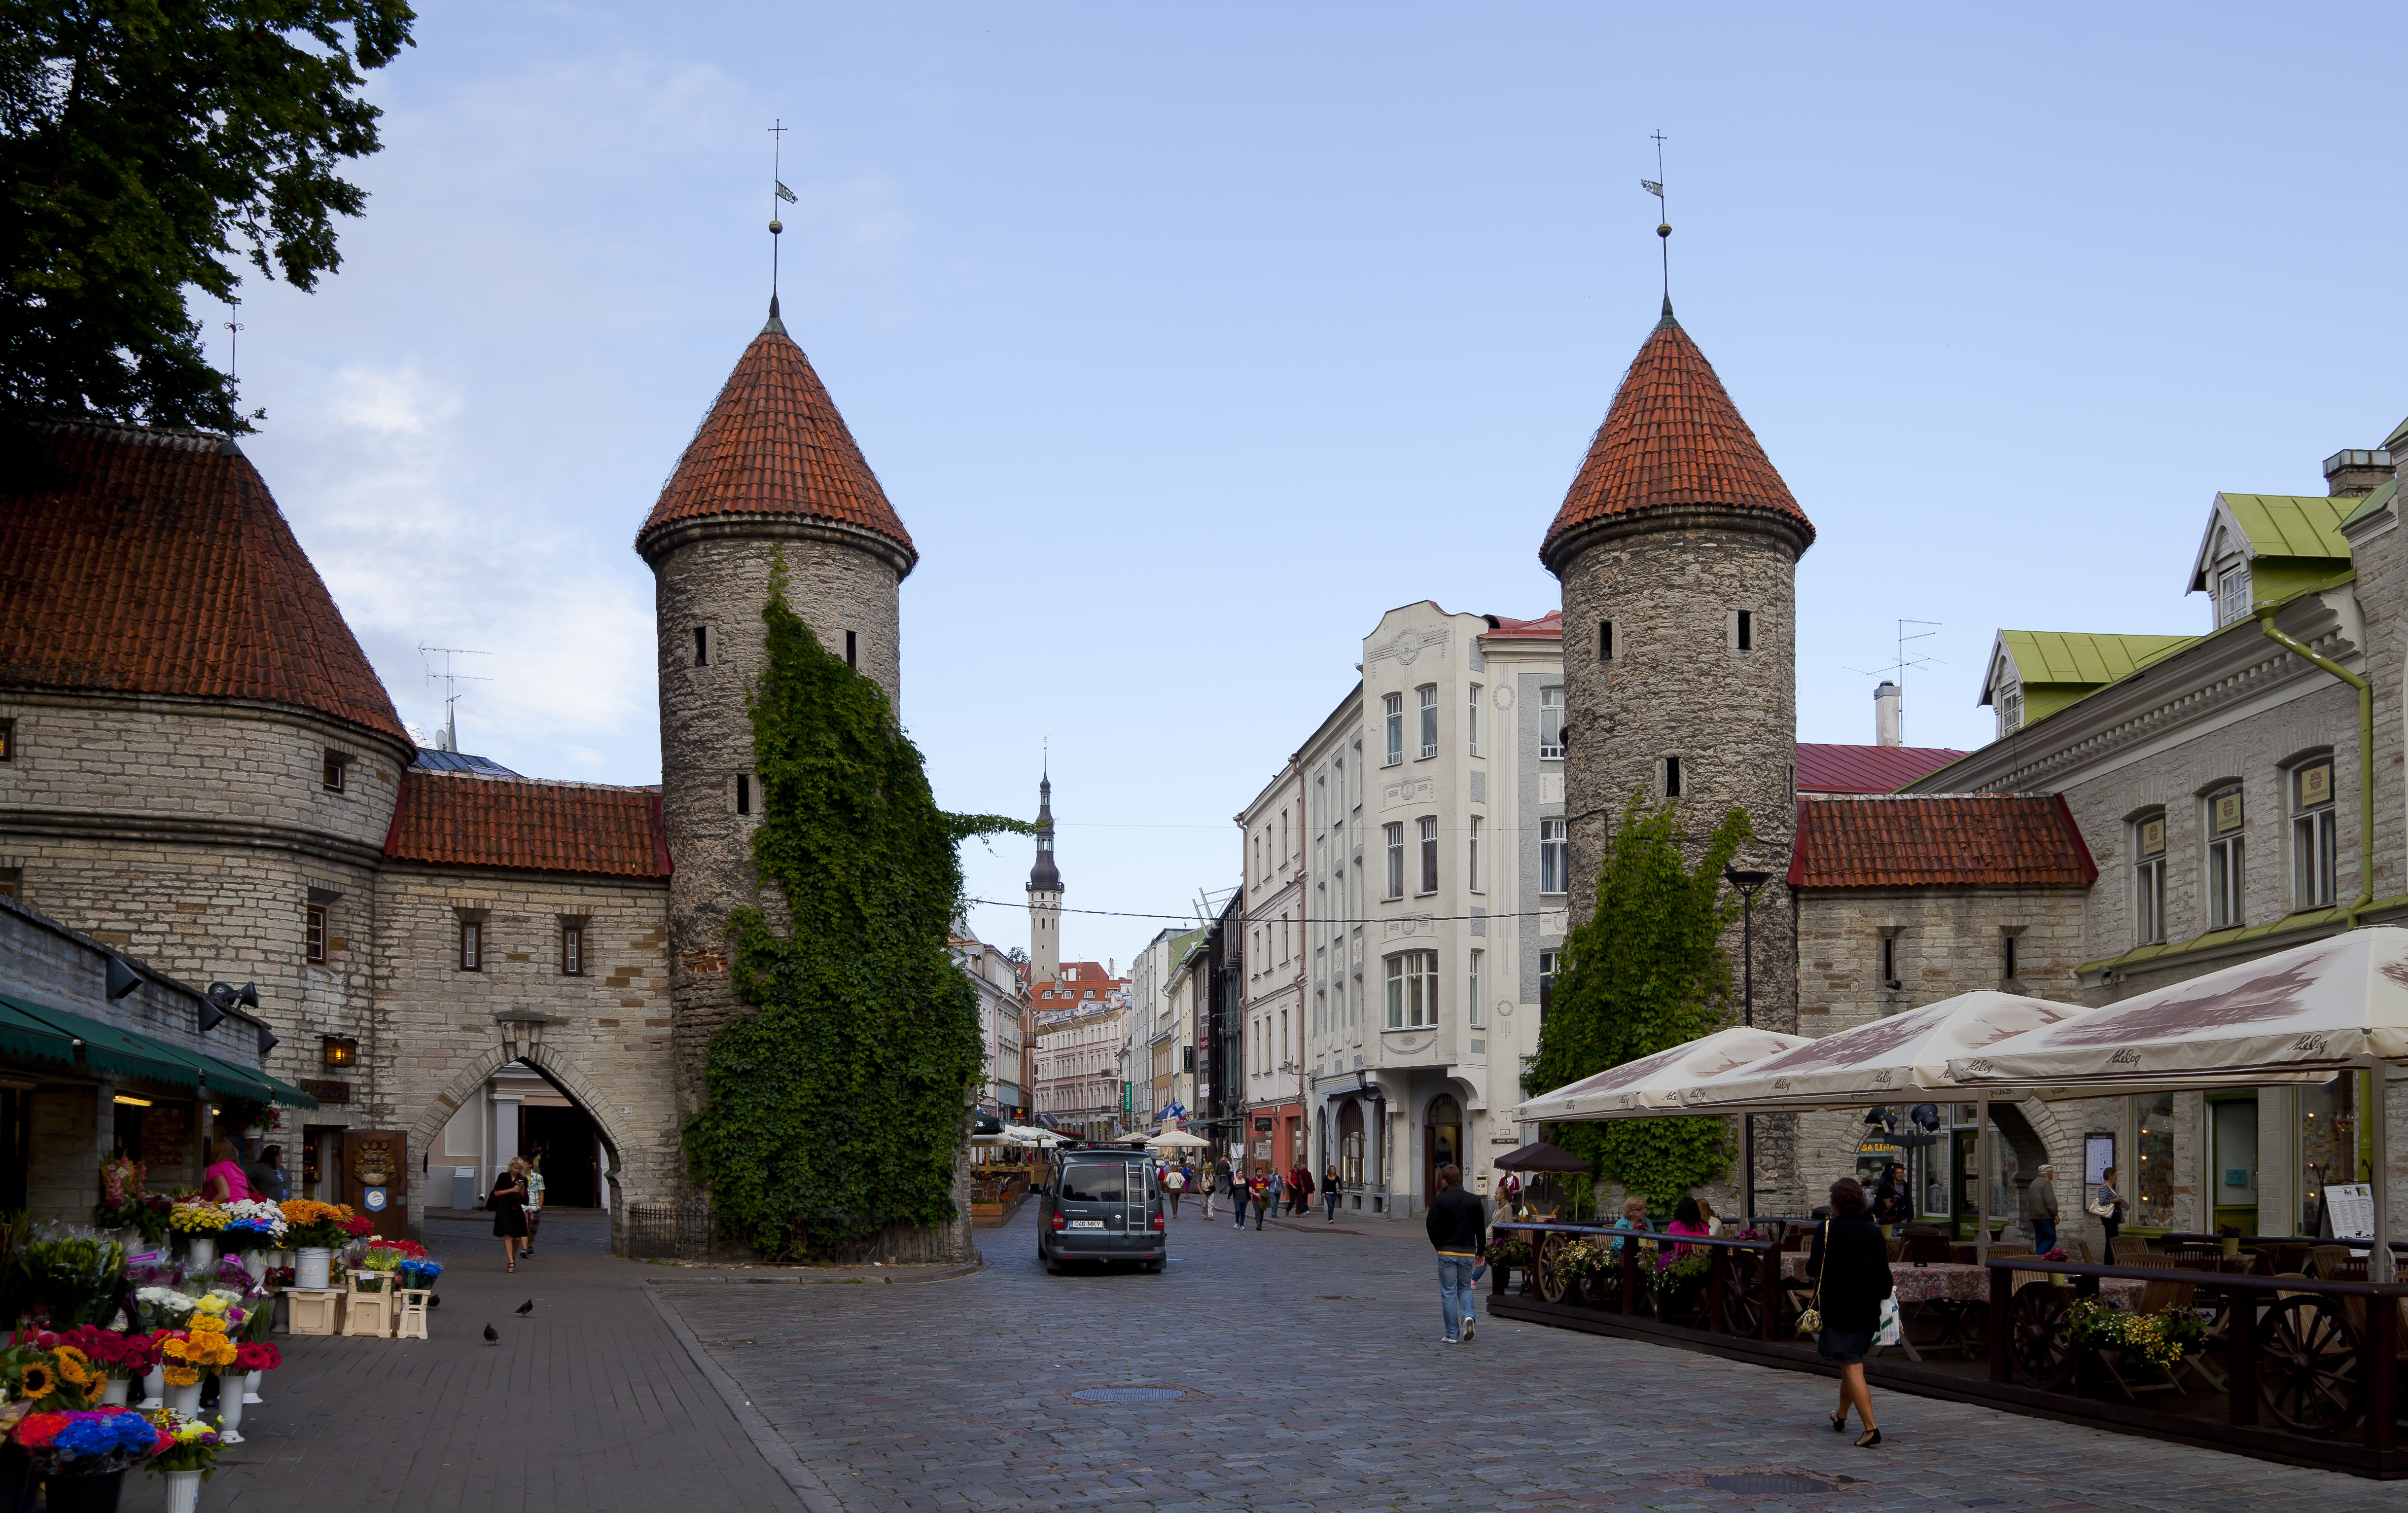 Puerta de Viru, Tallinn, Estonia, 2012-08-05, DD 11